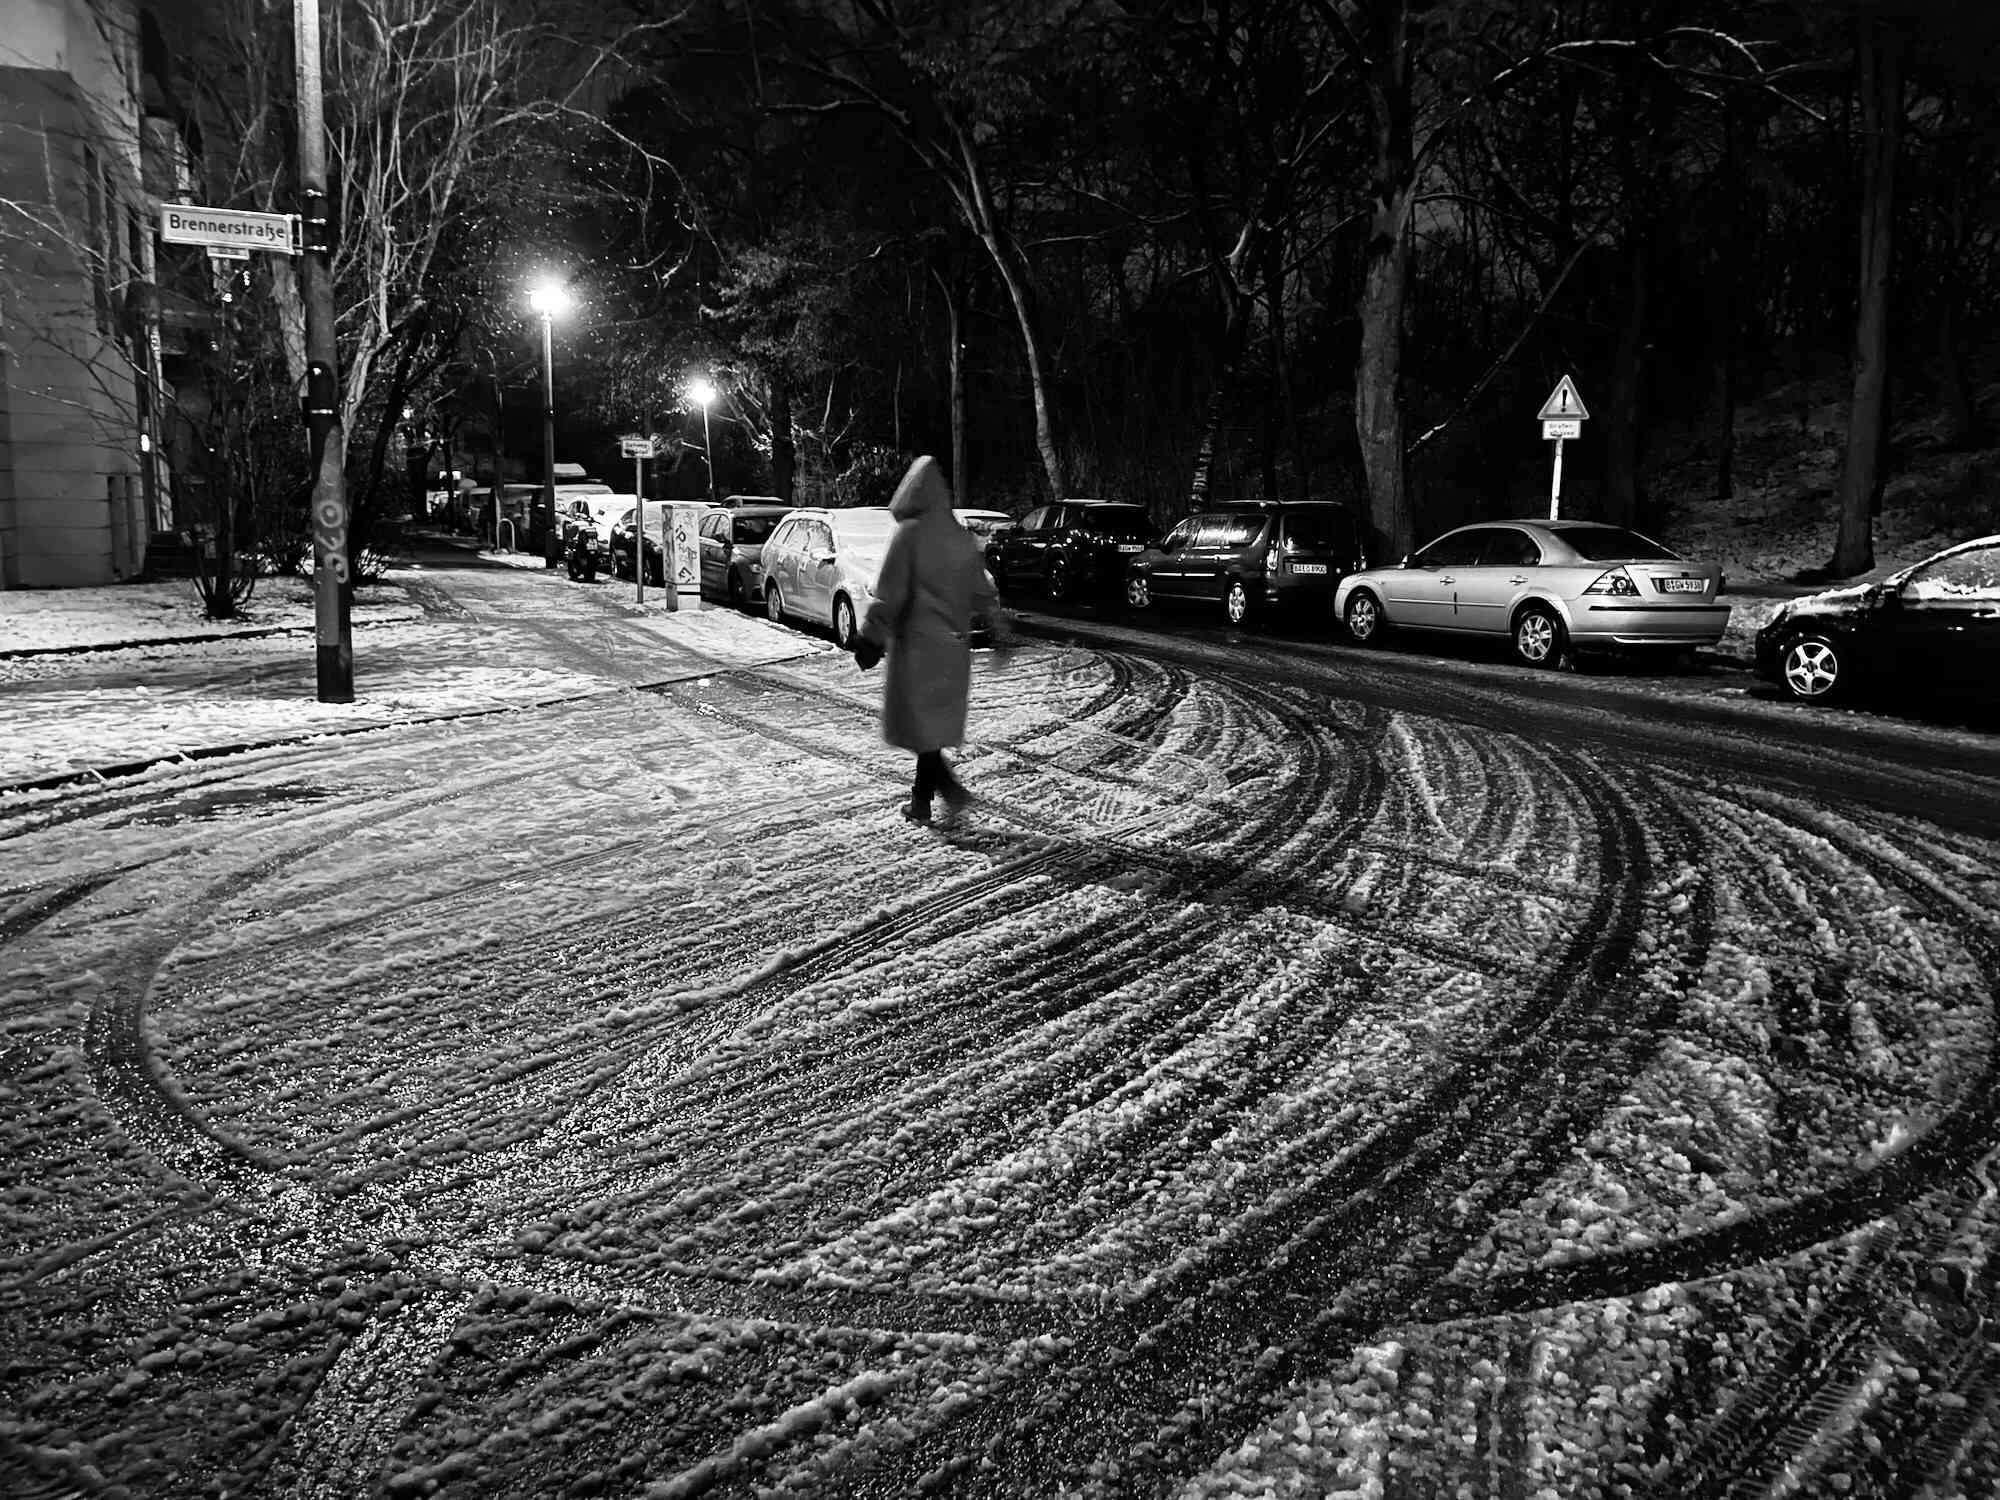 Obrázek pro mini kameru iPhone 12 zobrazující osobu, která kráčí v zasněžené noci s auty zaparkovanými na ulici.